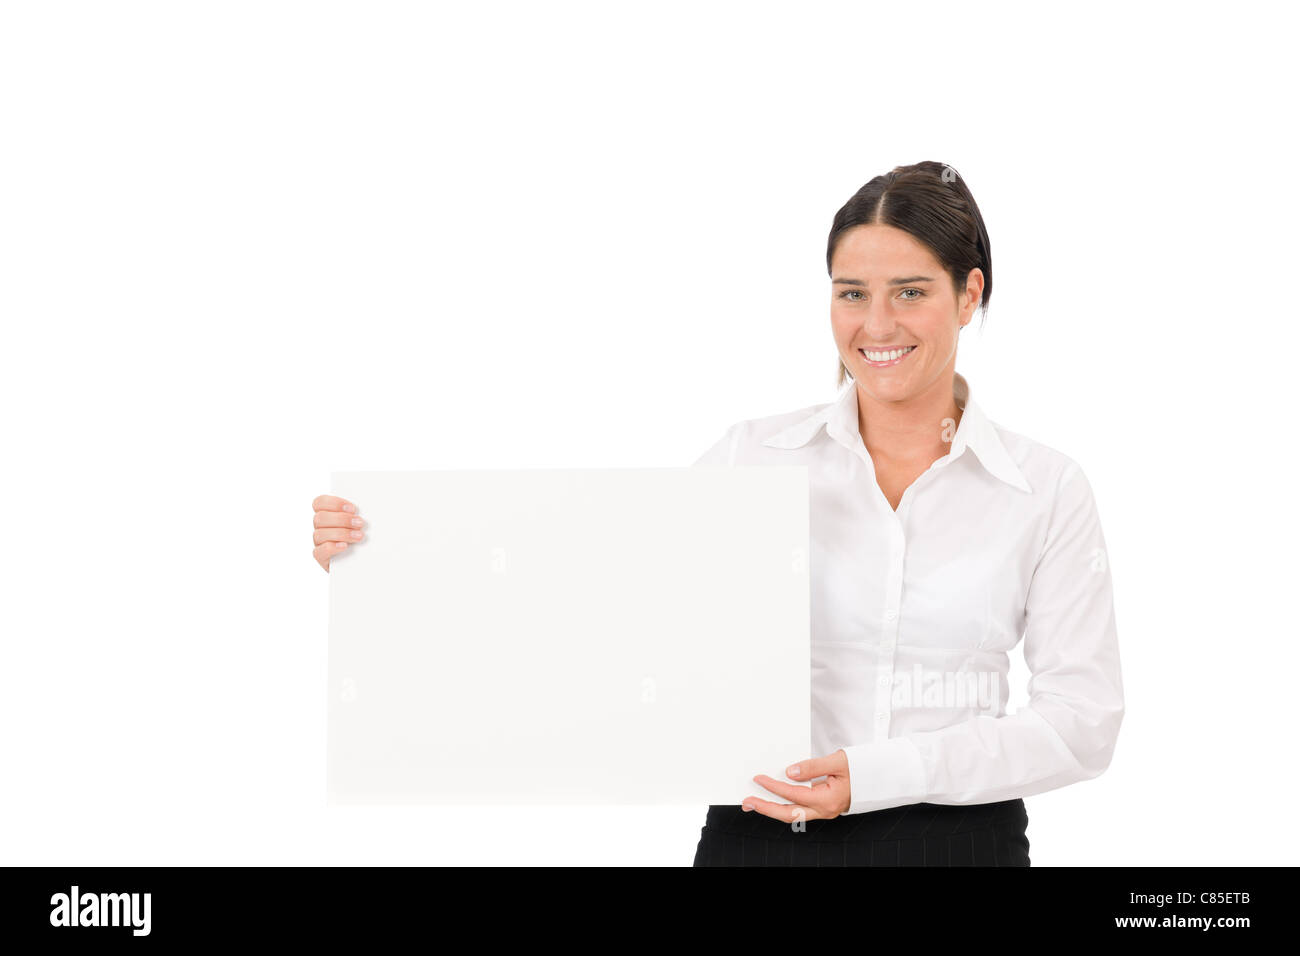 Happy businesswoman tenir de côté en blanc bandeau publicitaire sur white Banque D'Images